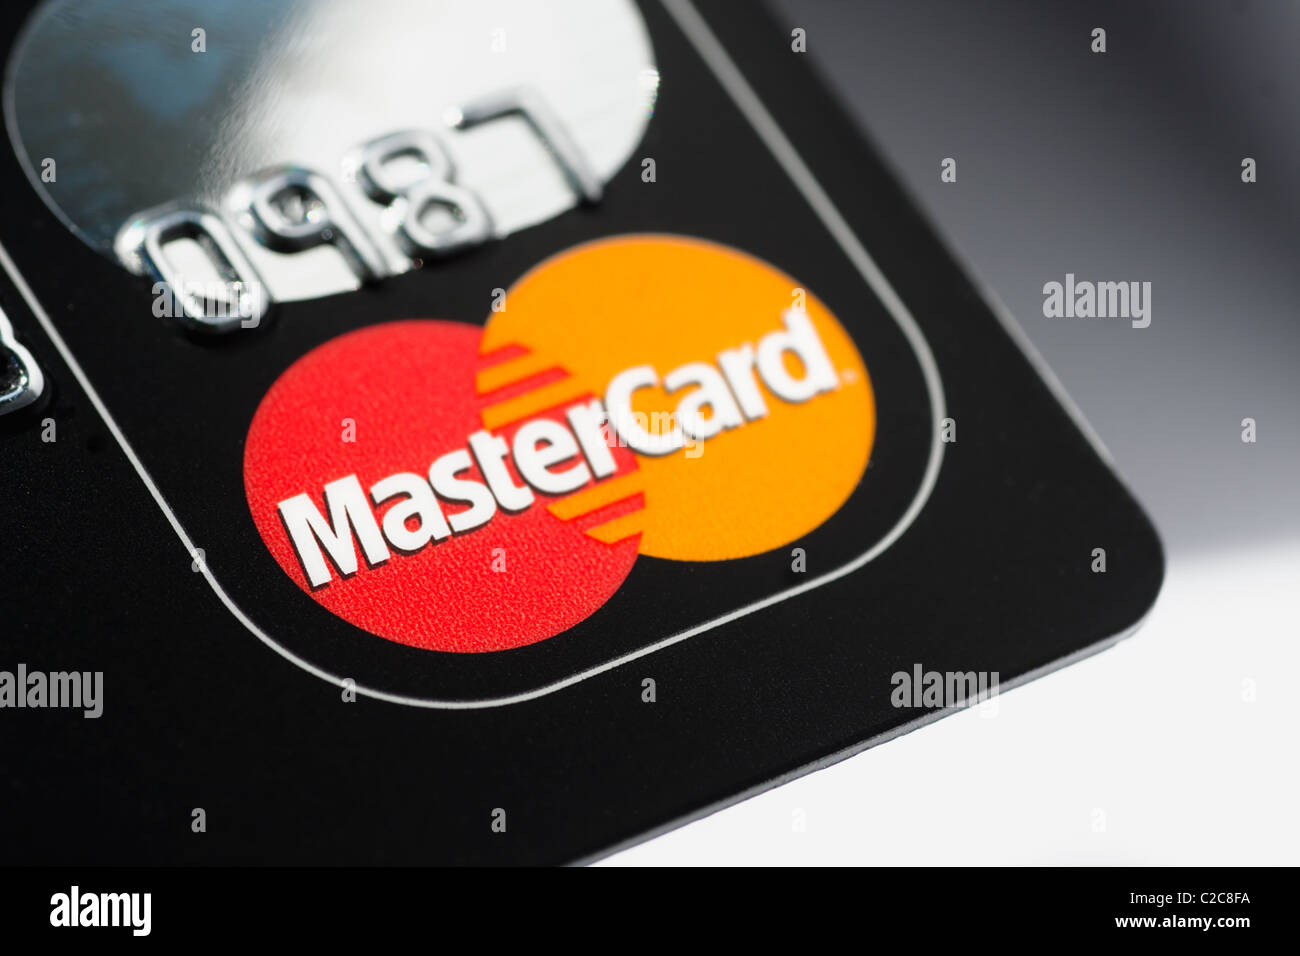 Una macro foto de una tarjeta de crédito Mastercard. Mastercard es una de las mayores compañía de tarjeta de crédito Foto de stock